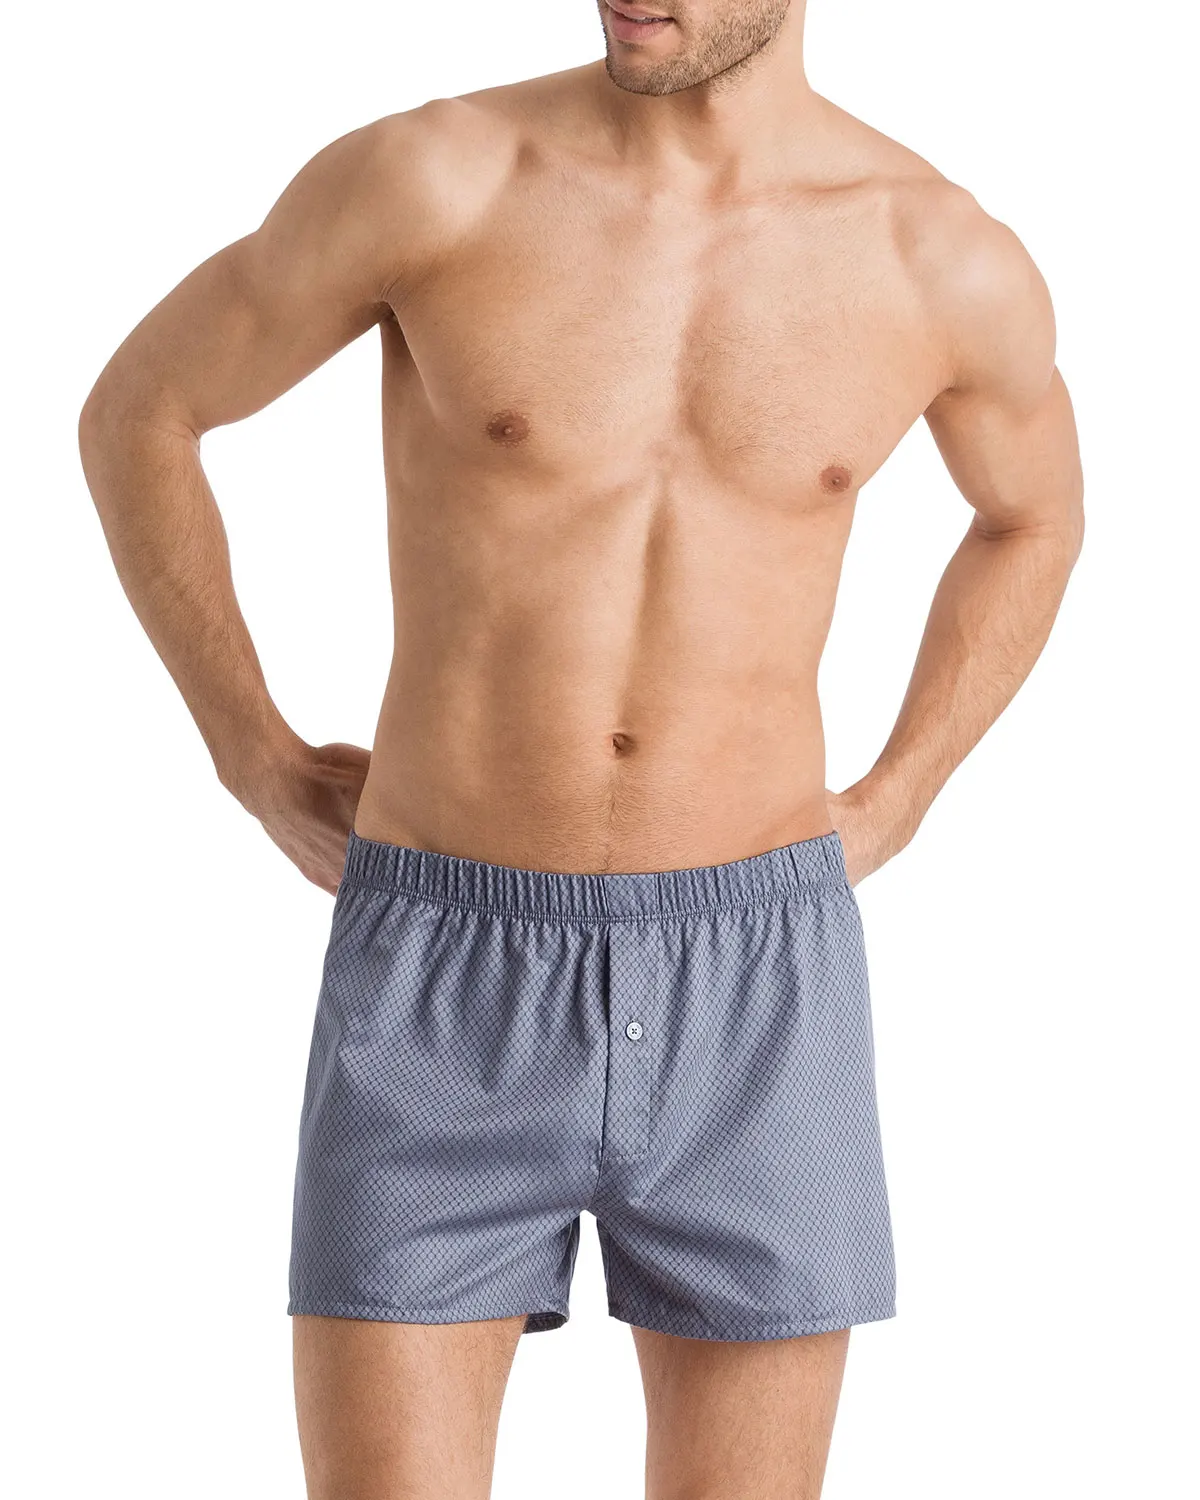 Mens Sexy White Underwear Xxx Bf Photo Men's Briefs & Boxers With Bulk ...